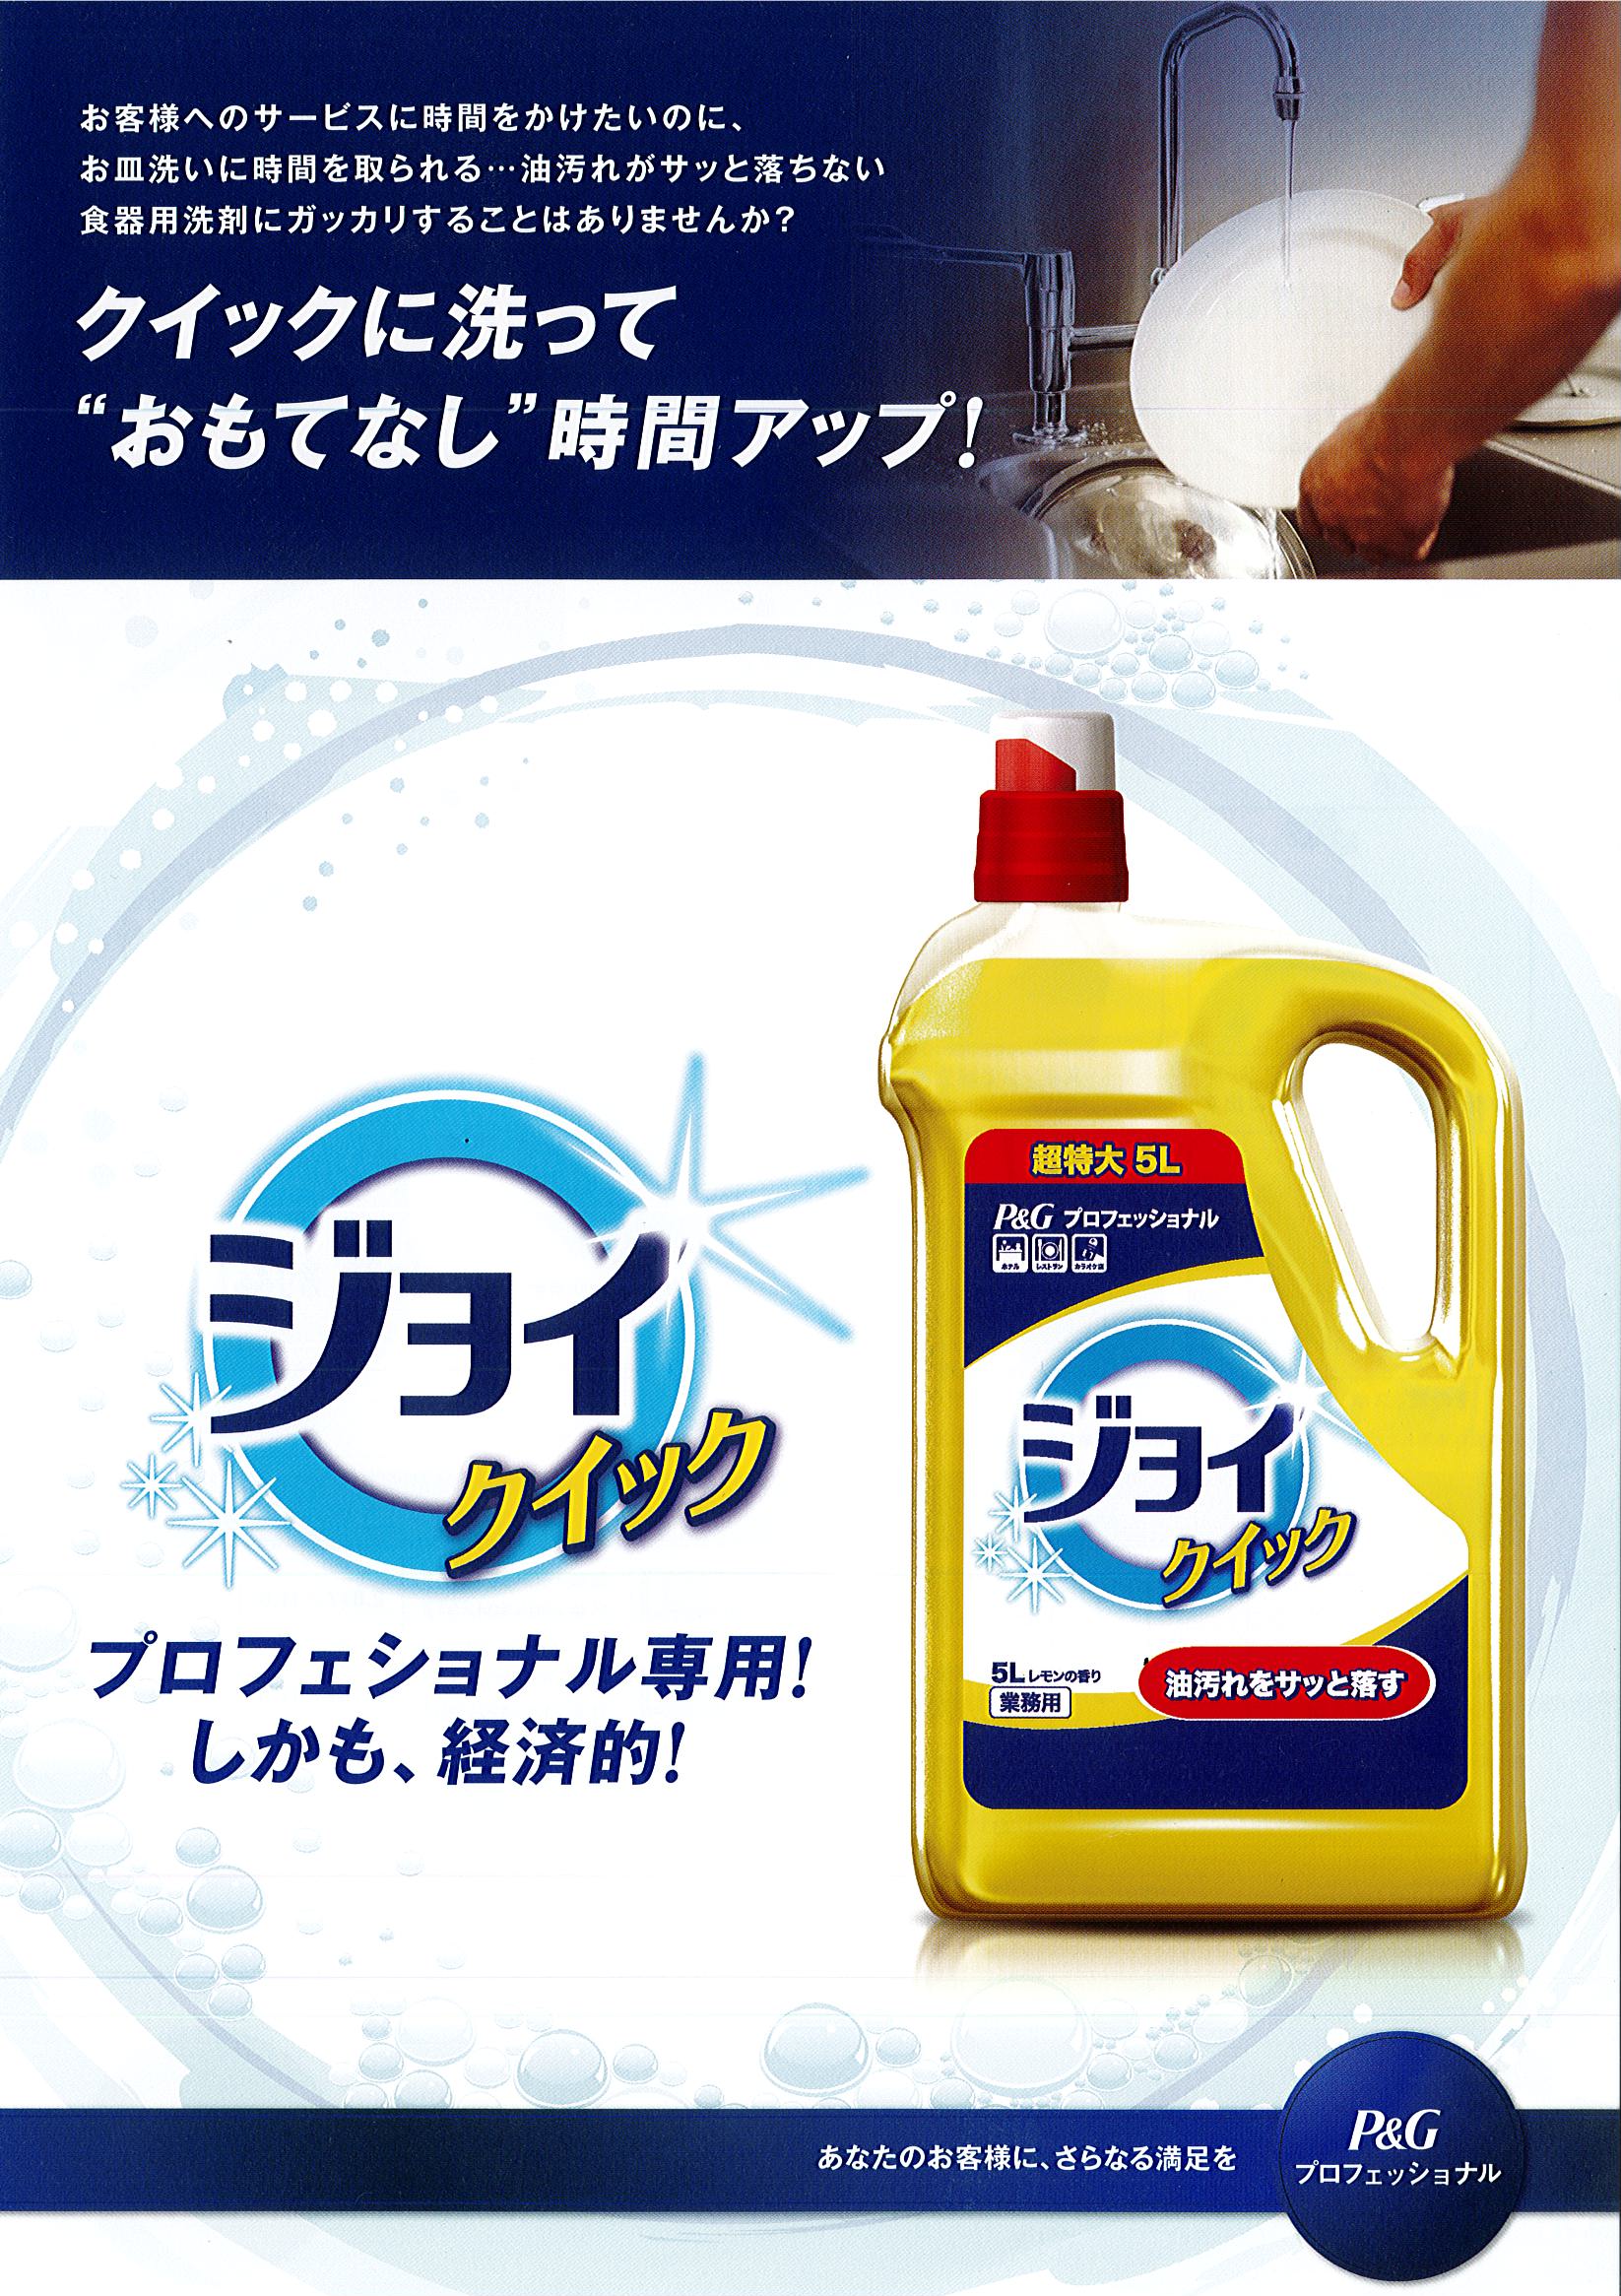 ジョイ クイック 食器用洗剤 業務用 レモンの香り 詰め替え 2.5l p&g